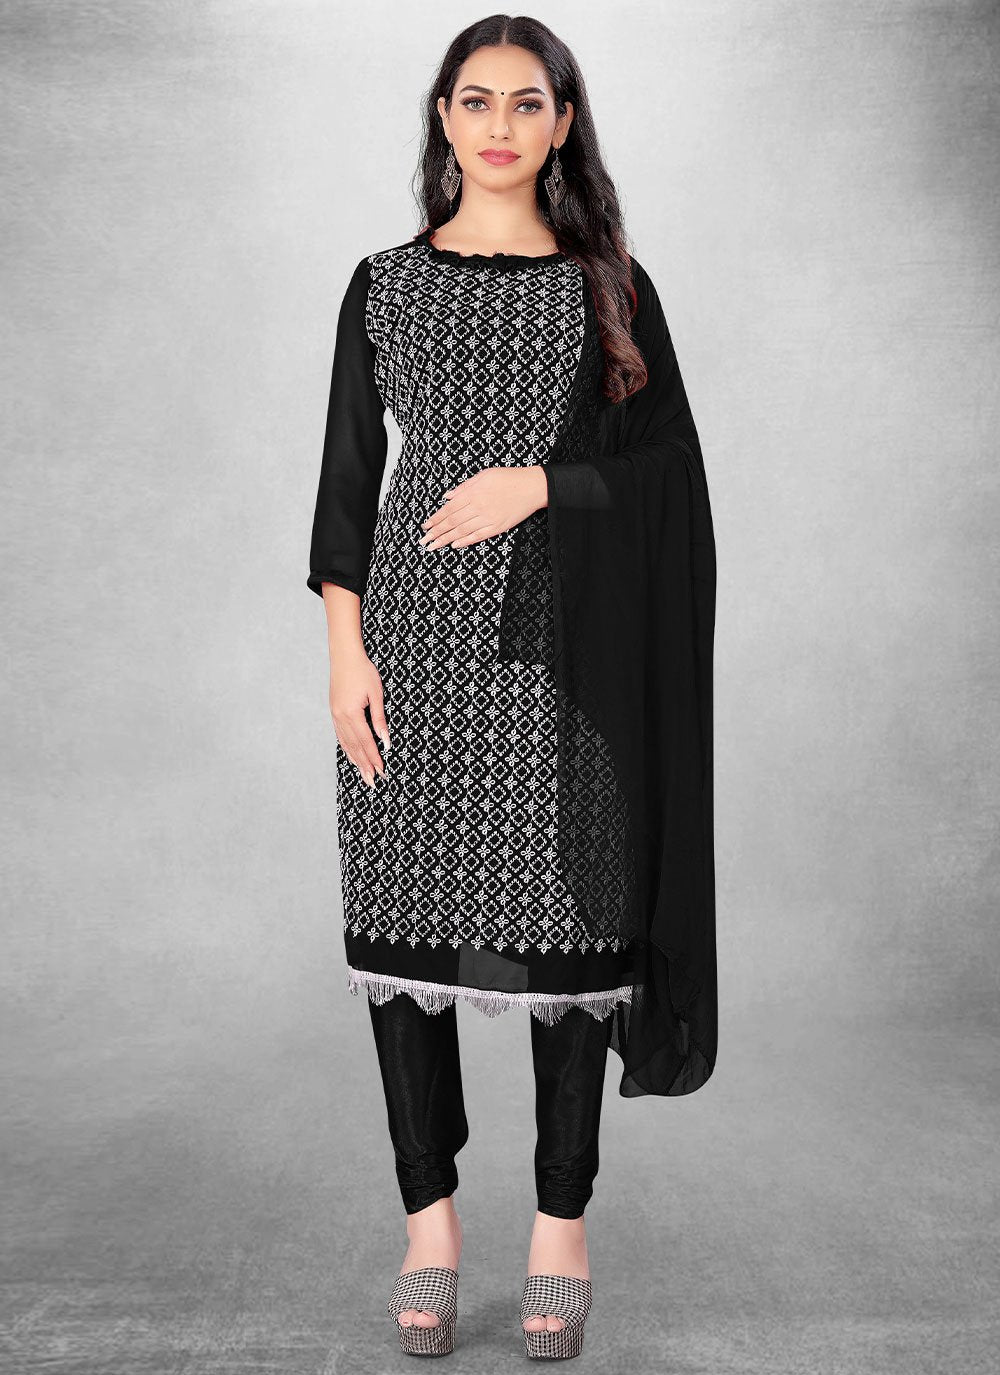 Salwar Suit Georgette Black Embroidered Salwar Kameez